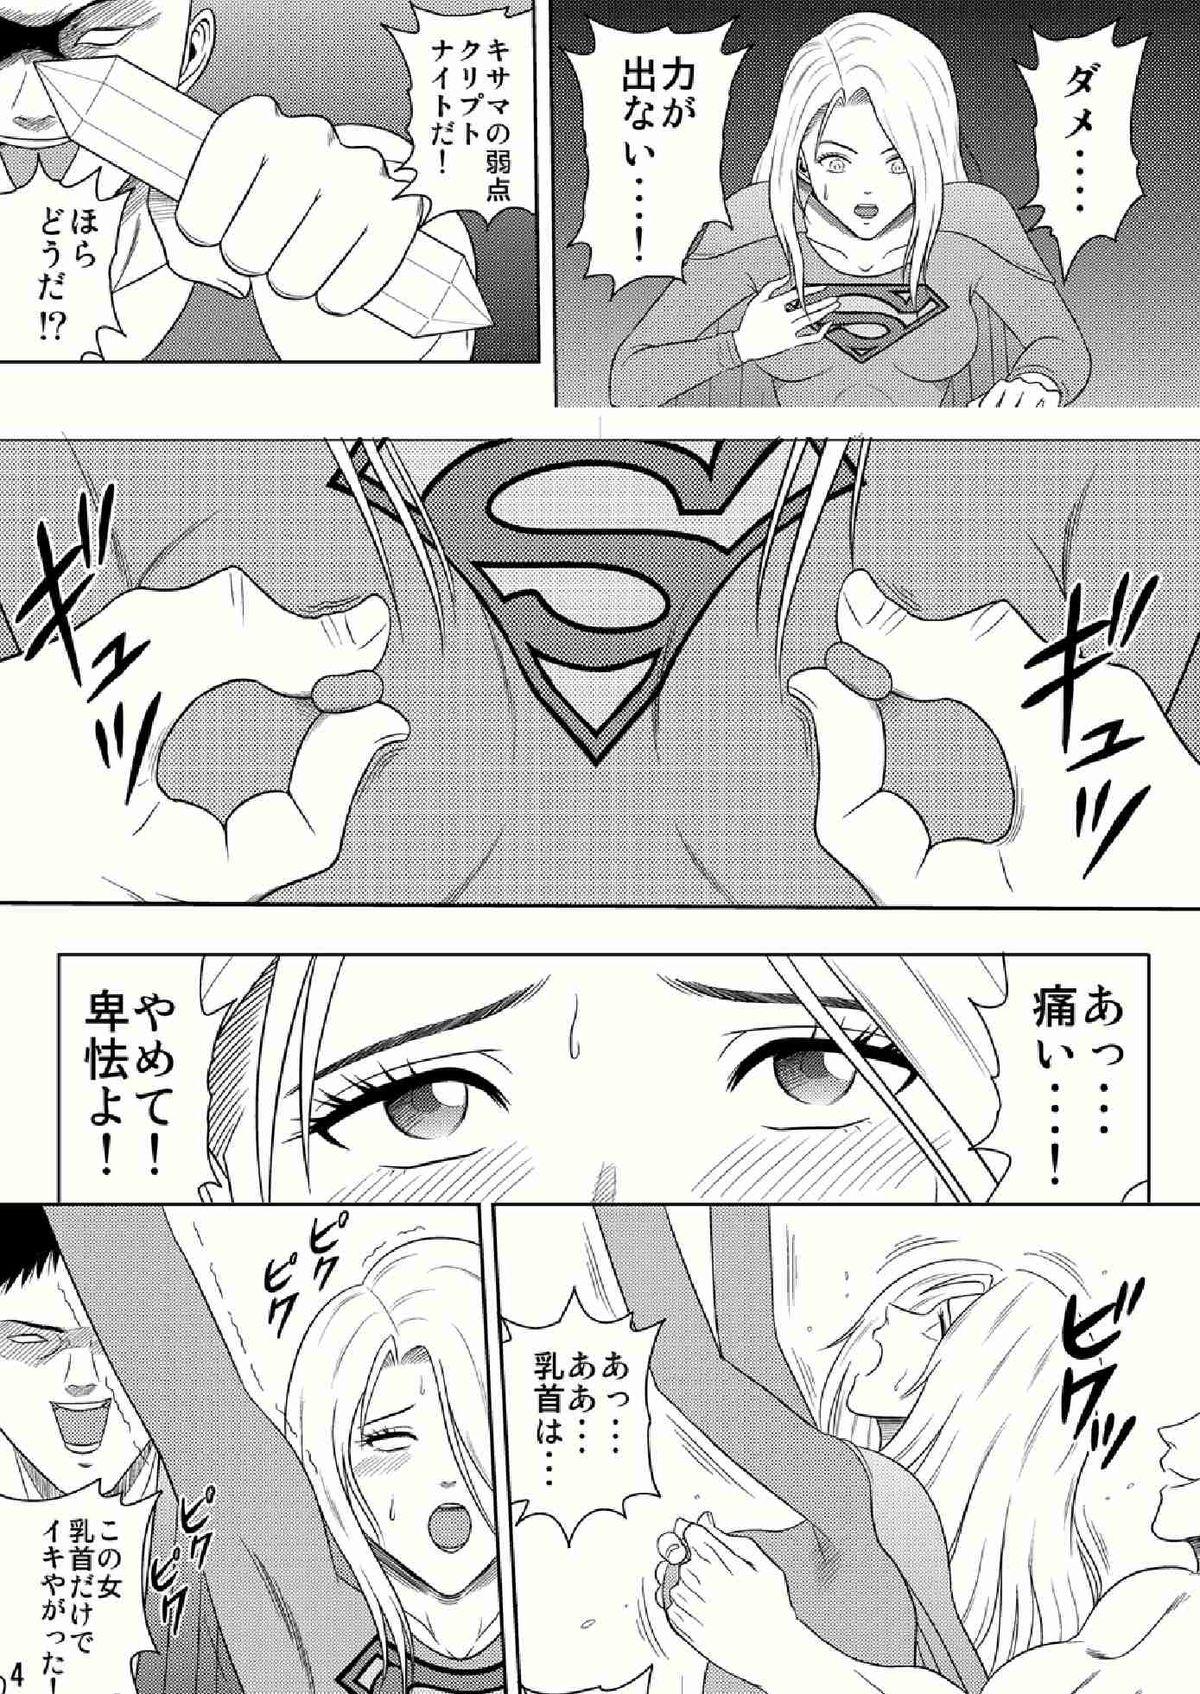 Blondes Toukikoubou vol.2 SUPER GIRL Milfs - Page 4